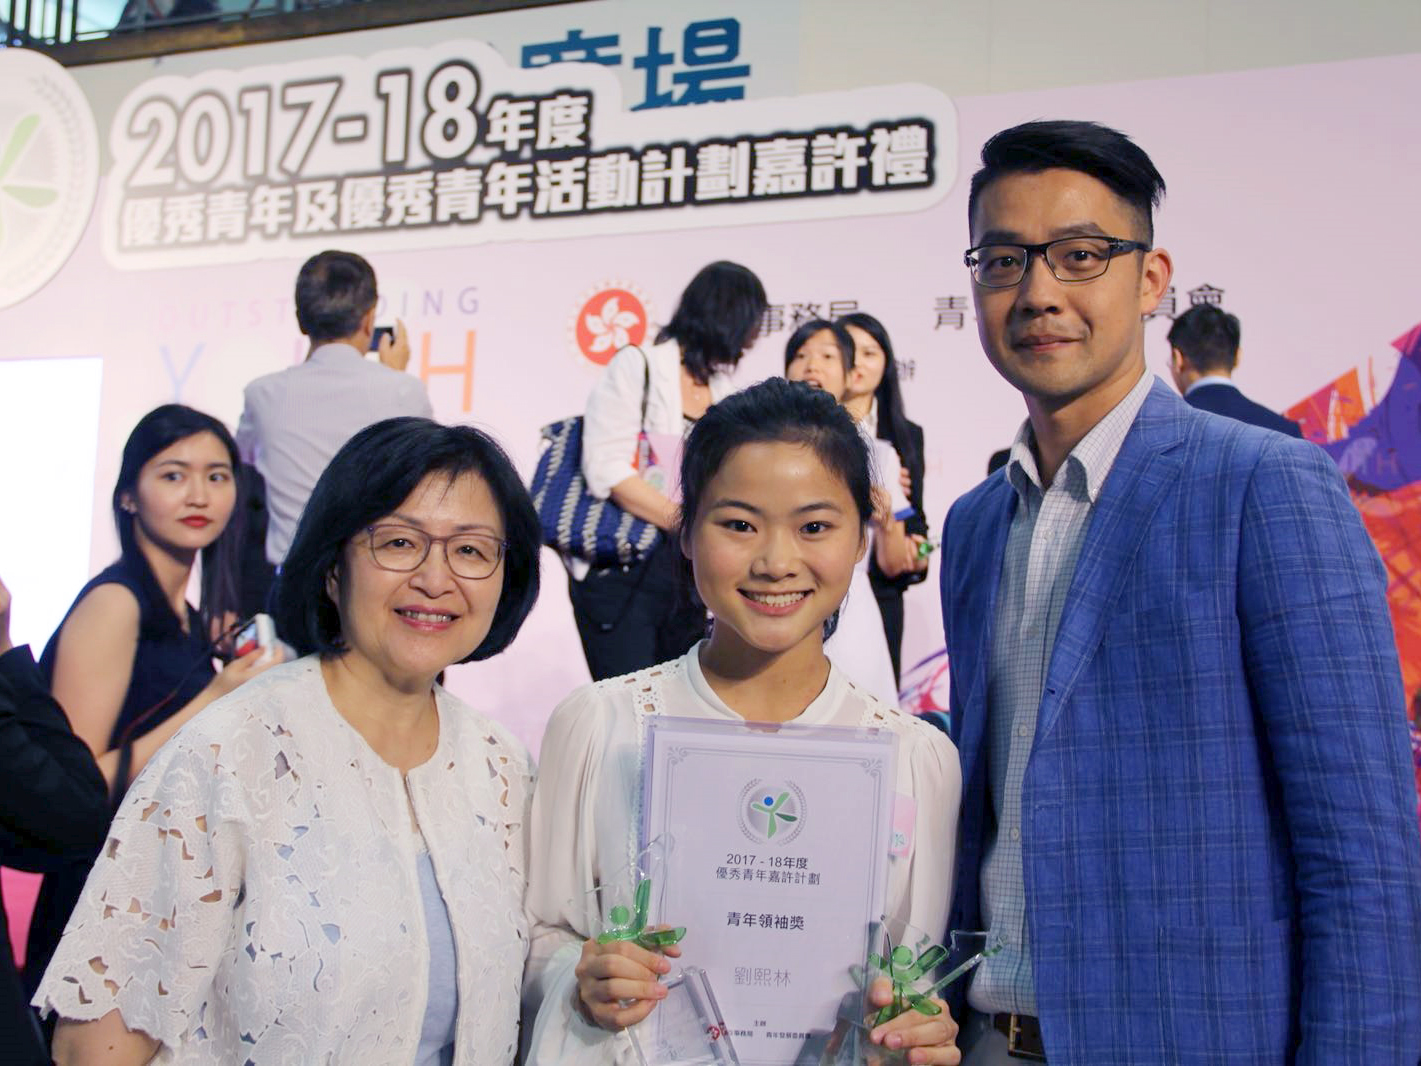 2017-18年度「優秀青年嘉許計劃」頒獎典禮